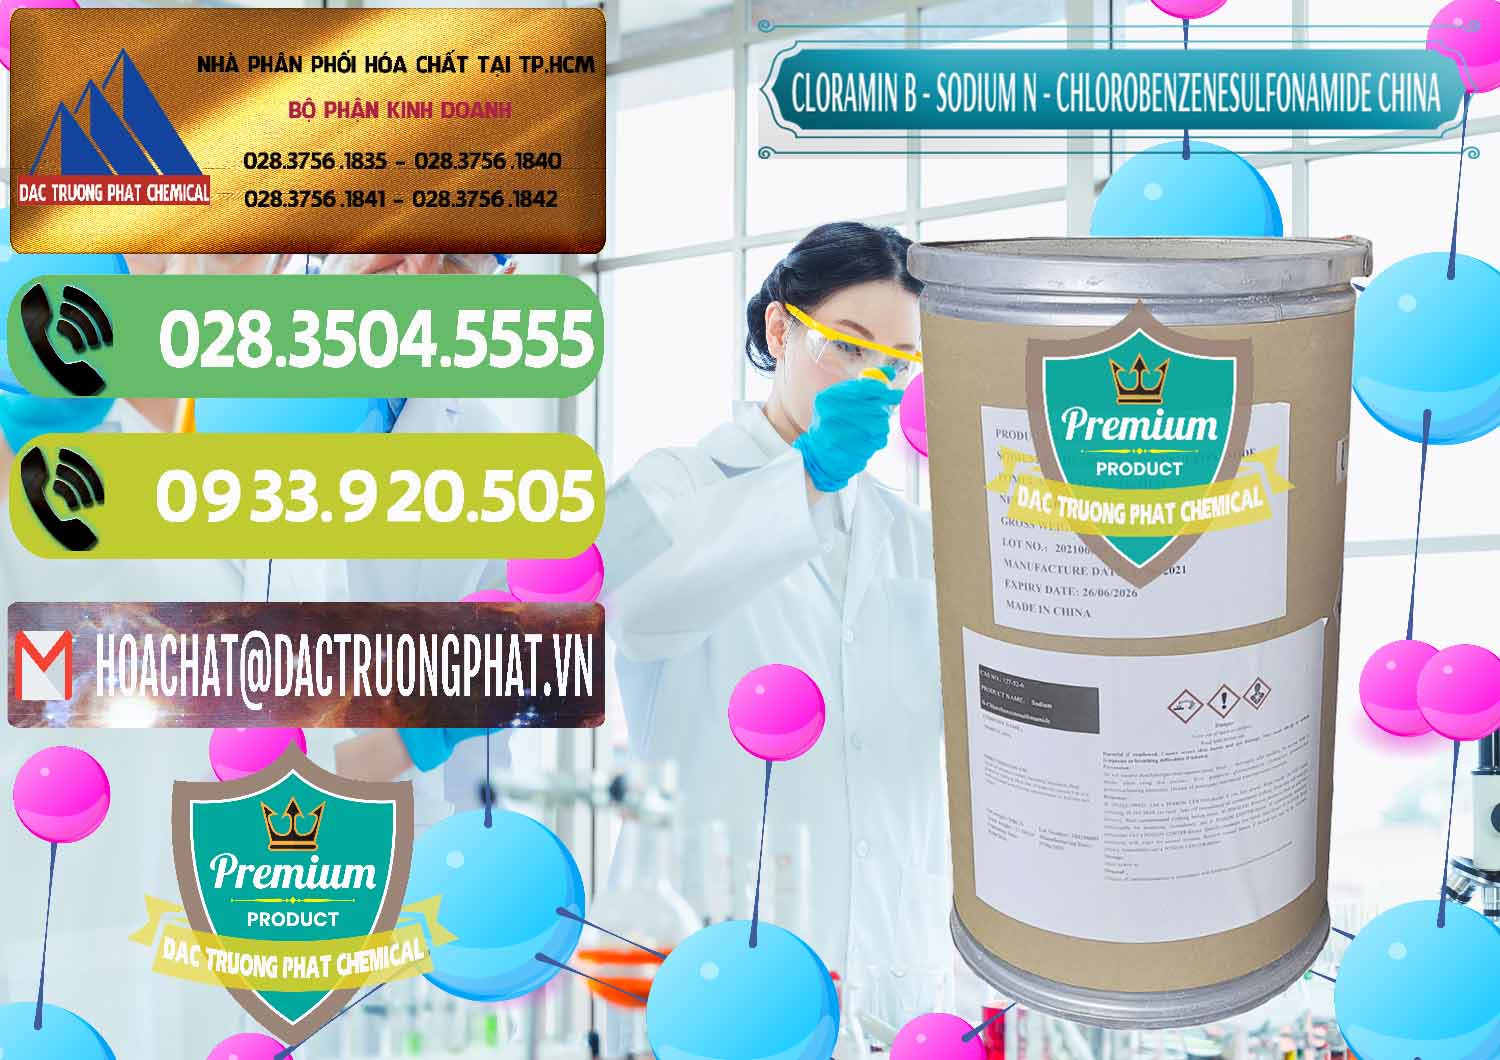 Đơn vị bán _ cung cấp Cloramin B Khử Trùng, Diệt Khuẩn Trung Quốc China - 0298 - Nhà nhập khẩu - phân phối hóa chất tại TP.HCM - hoachatmientay.vn